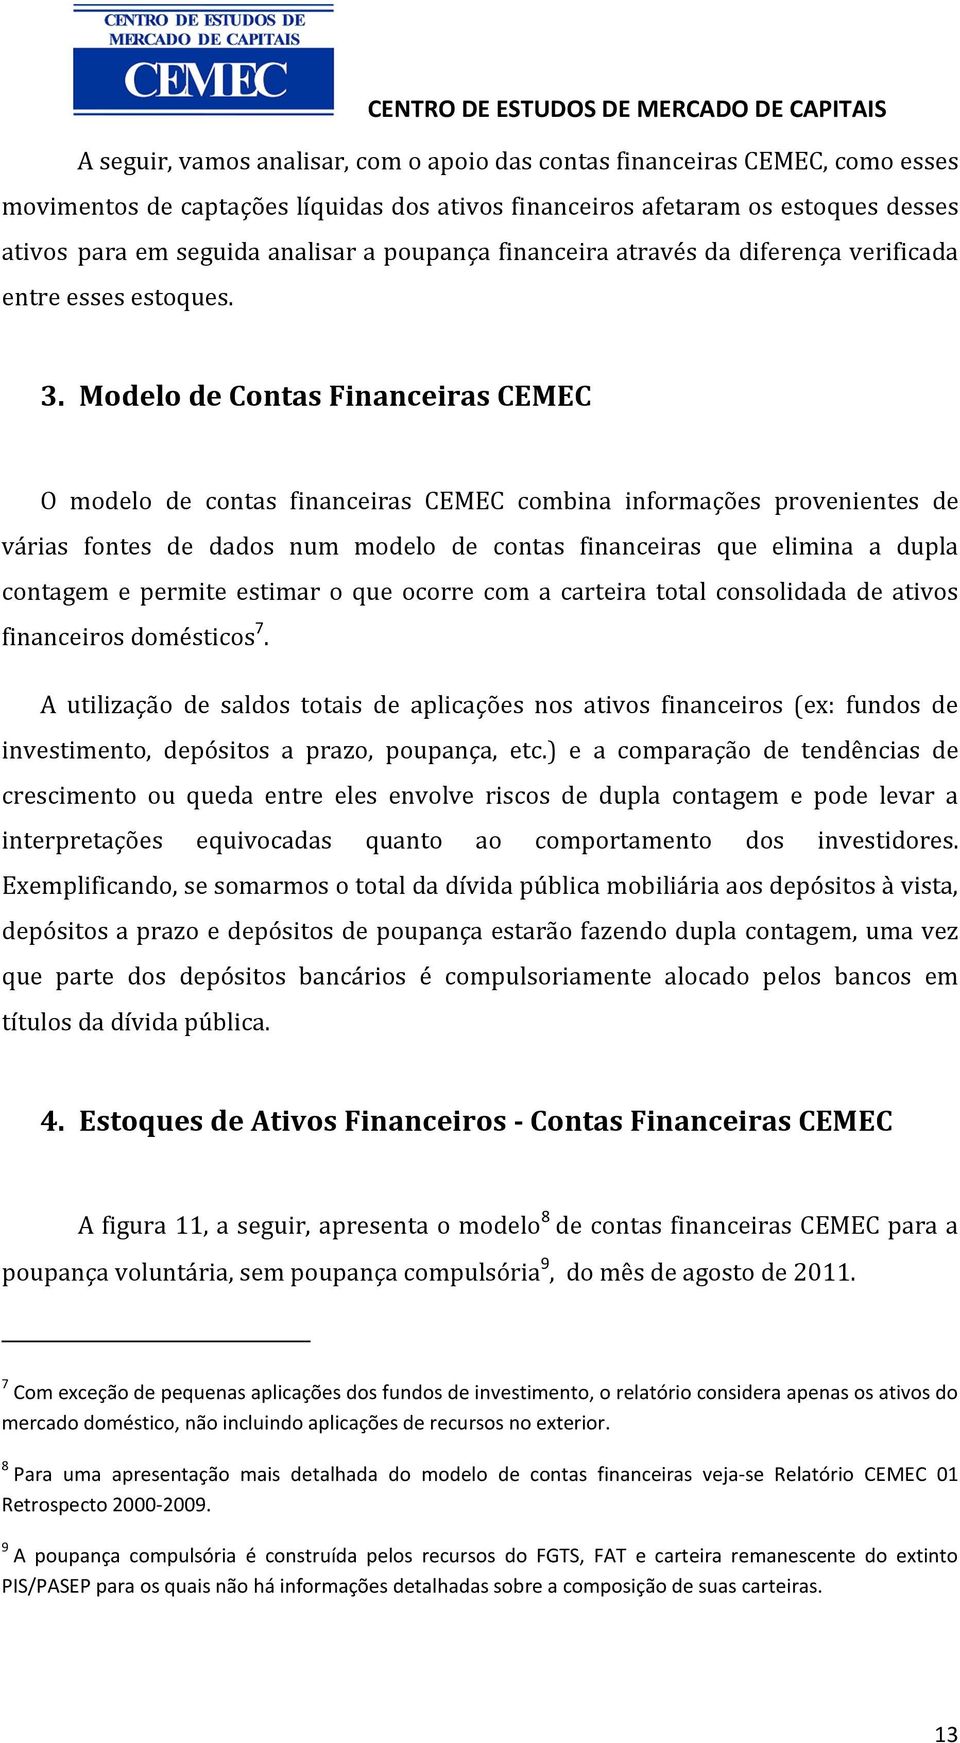 Modelo de Contas Financeiras CEMEC O modelo de contas financeiras CEMEC combina informações provenientes de várias fontes de dados num modelo de contas financeiras que elimina a dupla contagem e